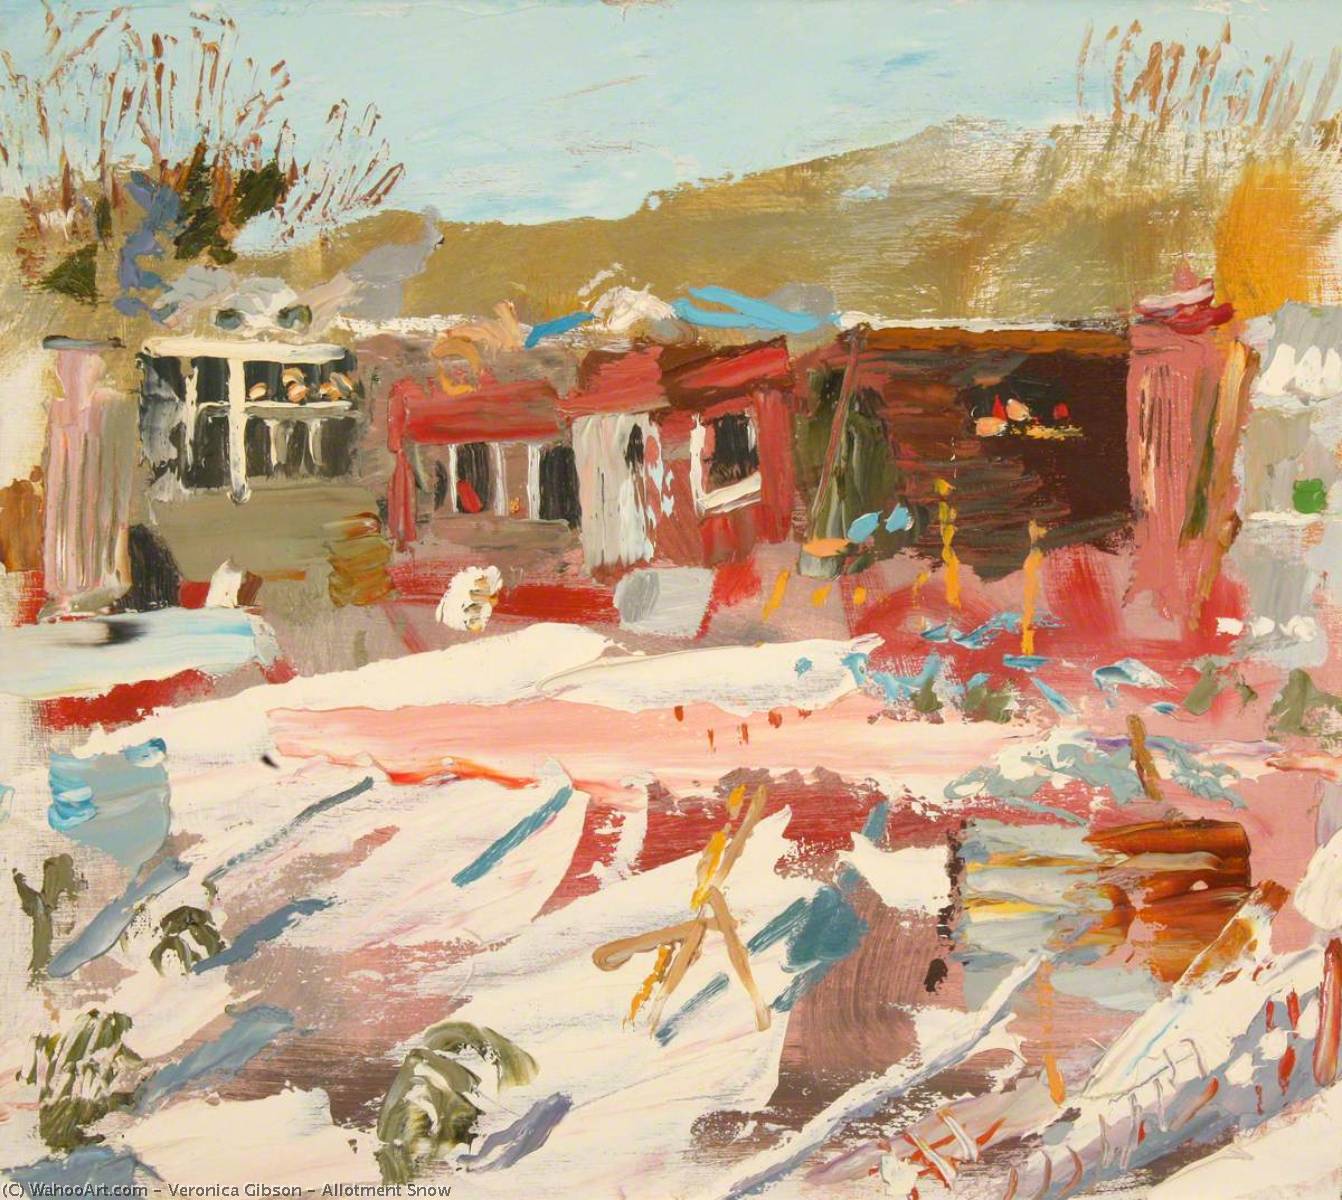 Allotment Snow, 2001 by Veronica Gibson Veronica Gibson | ArtsDot.com